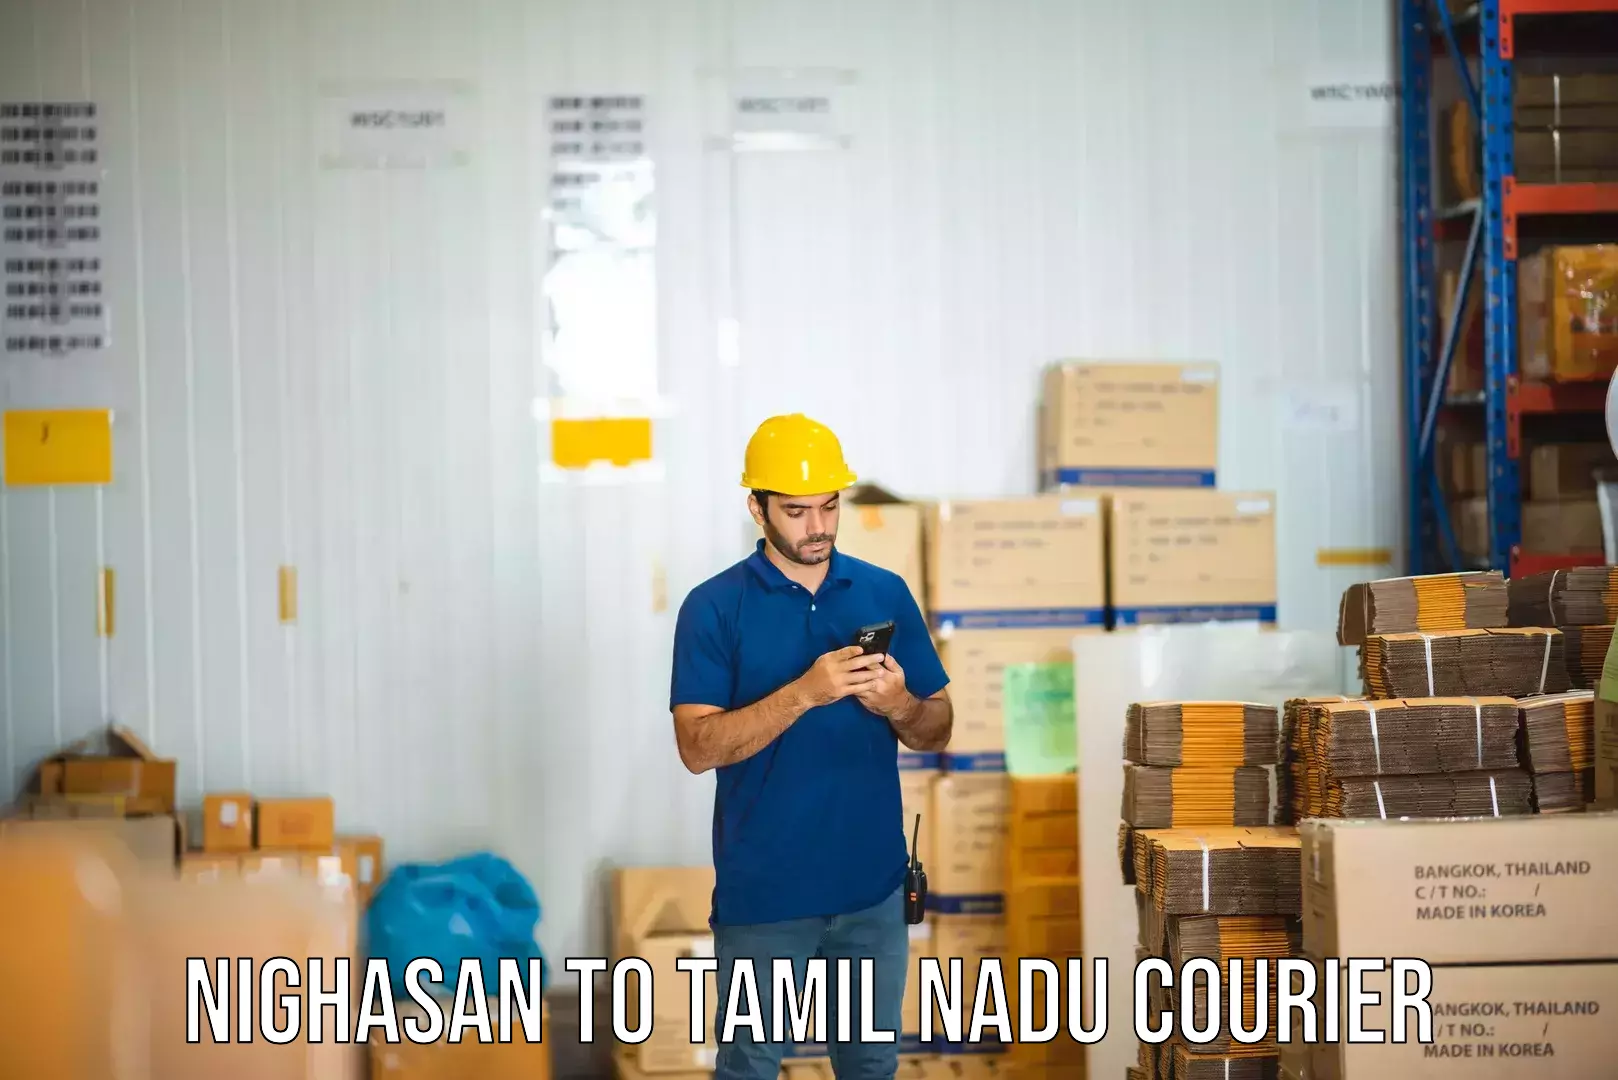 Bulk courier orders Nighasan to Anna University Chennai